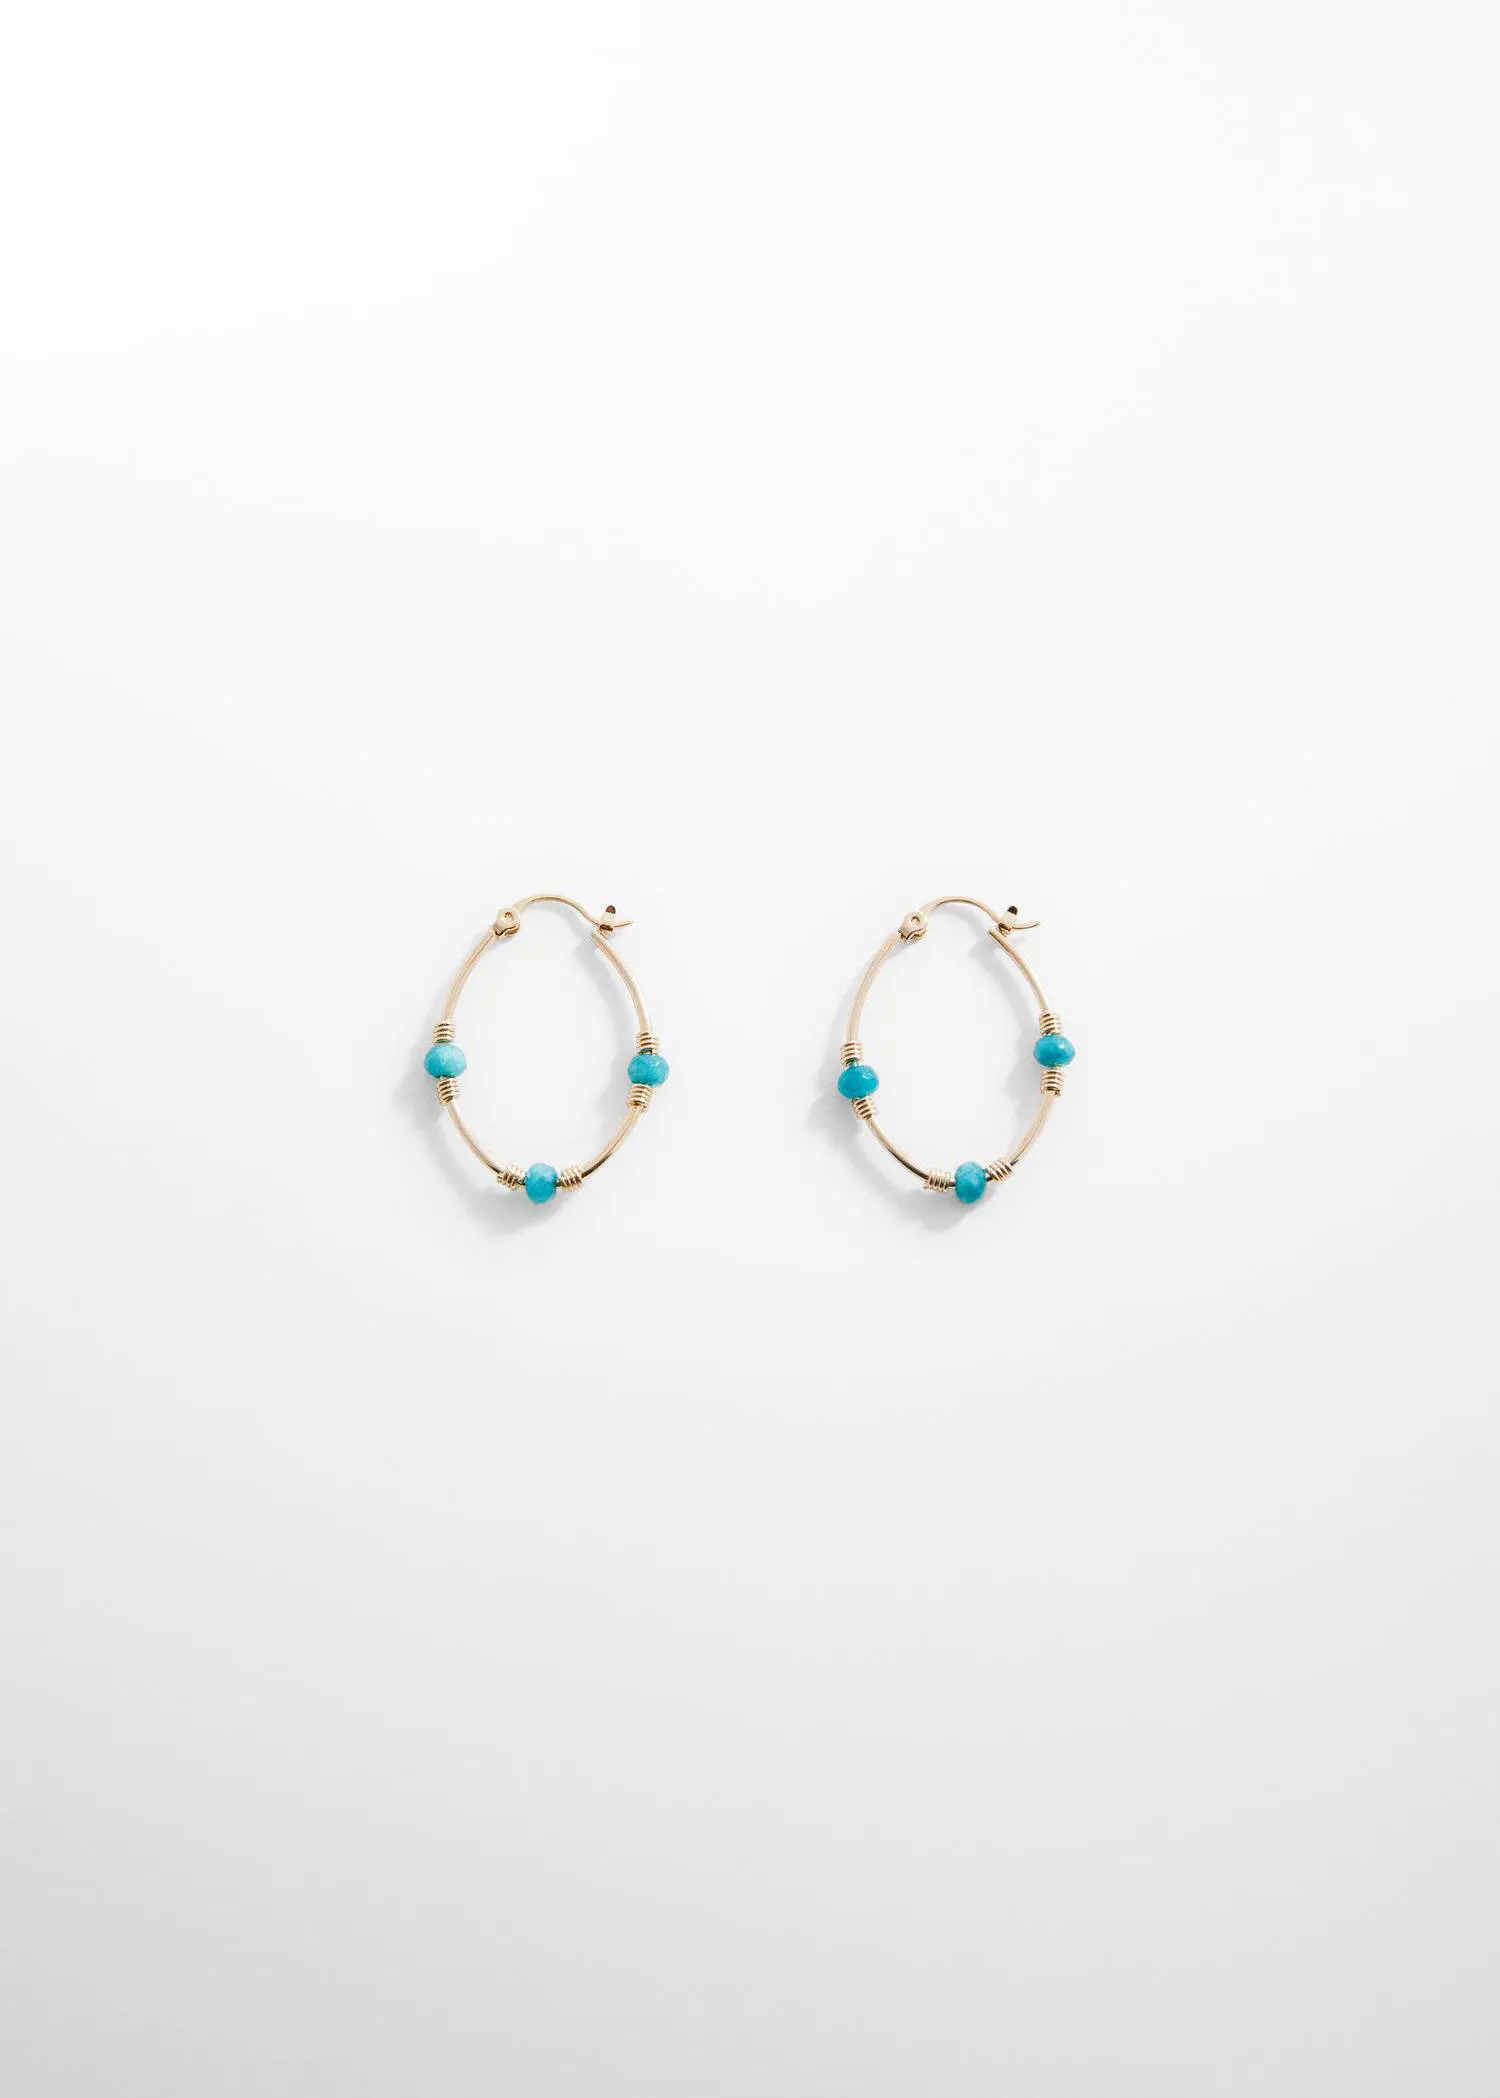 Mango Stone hoop earrings. a pair of gold and turquoise hoop earrings. 